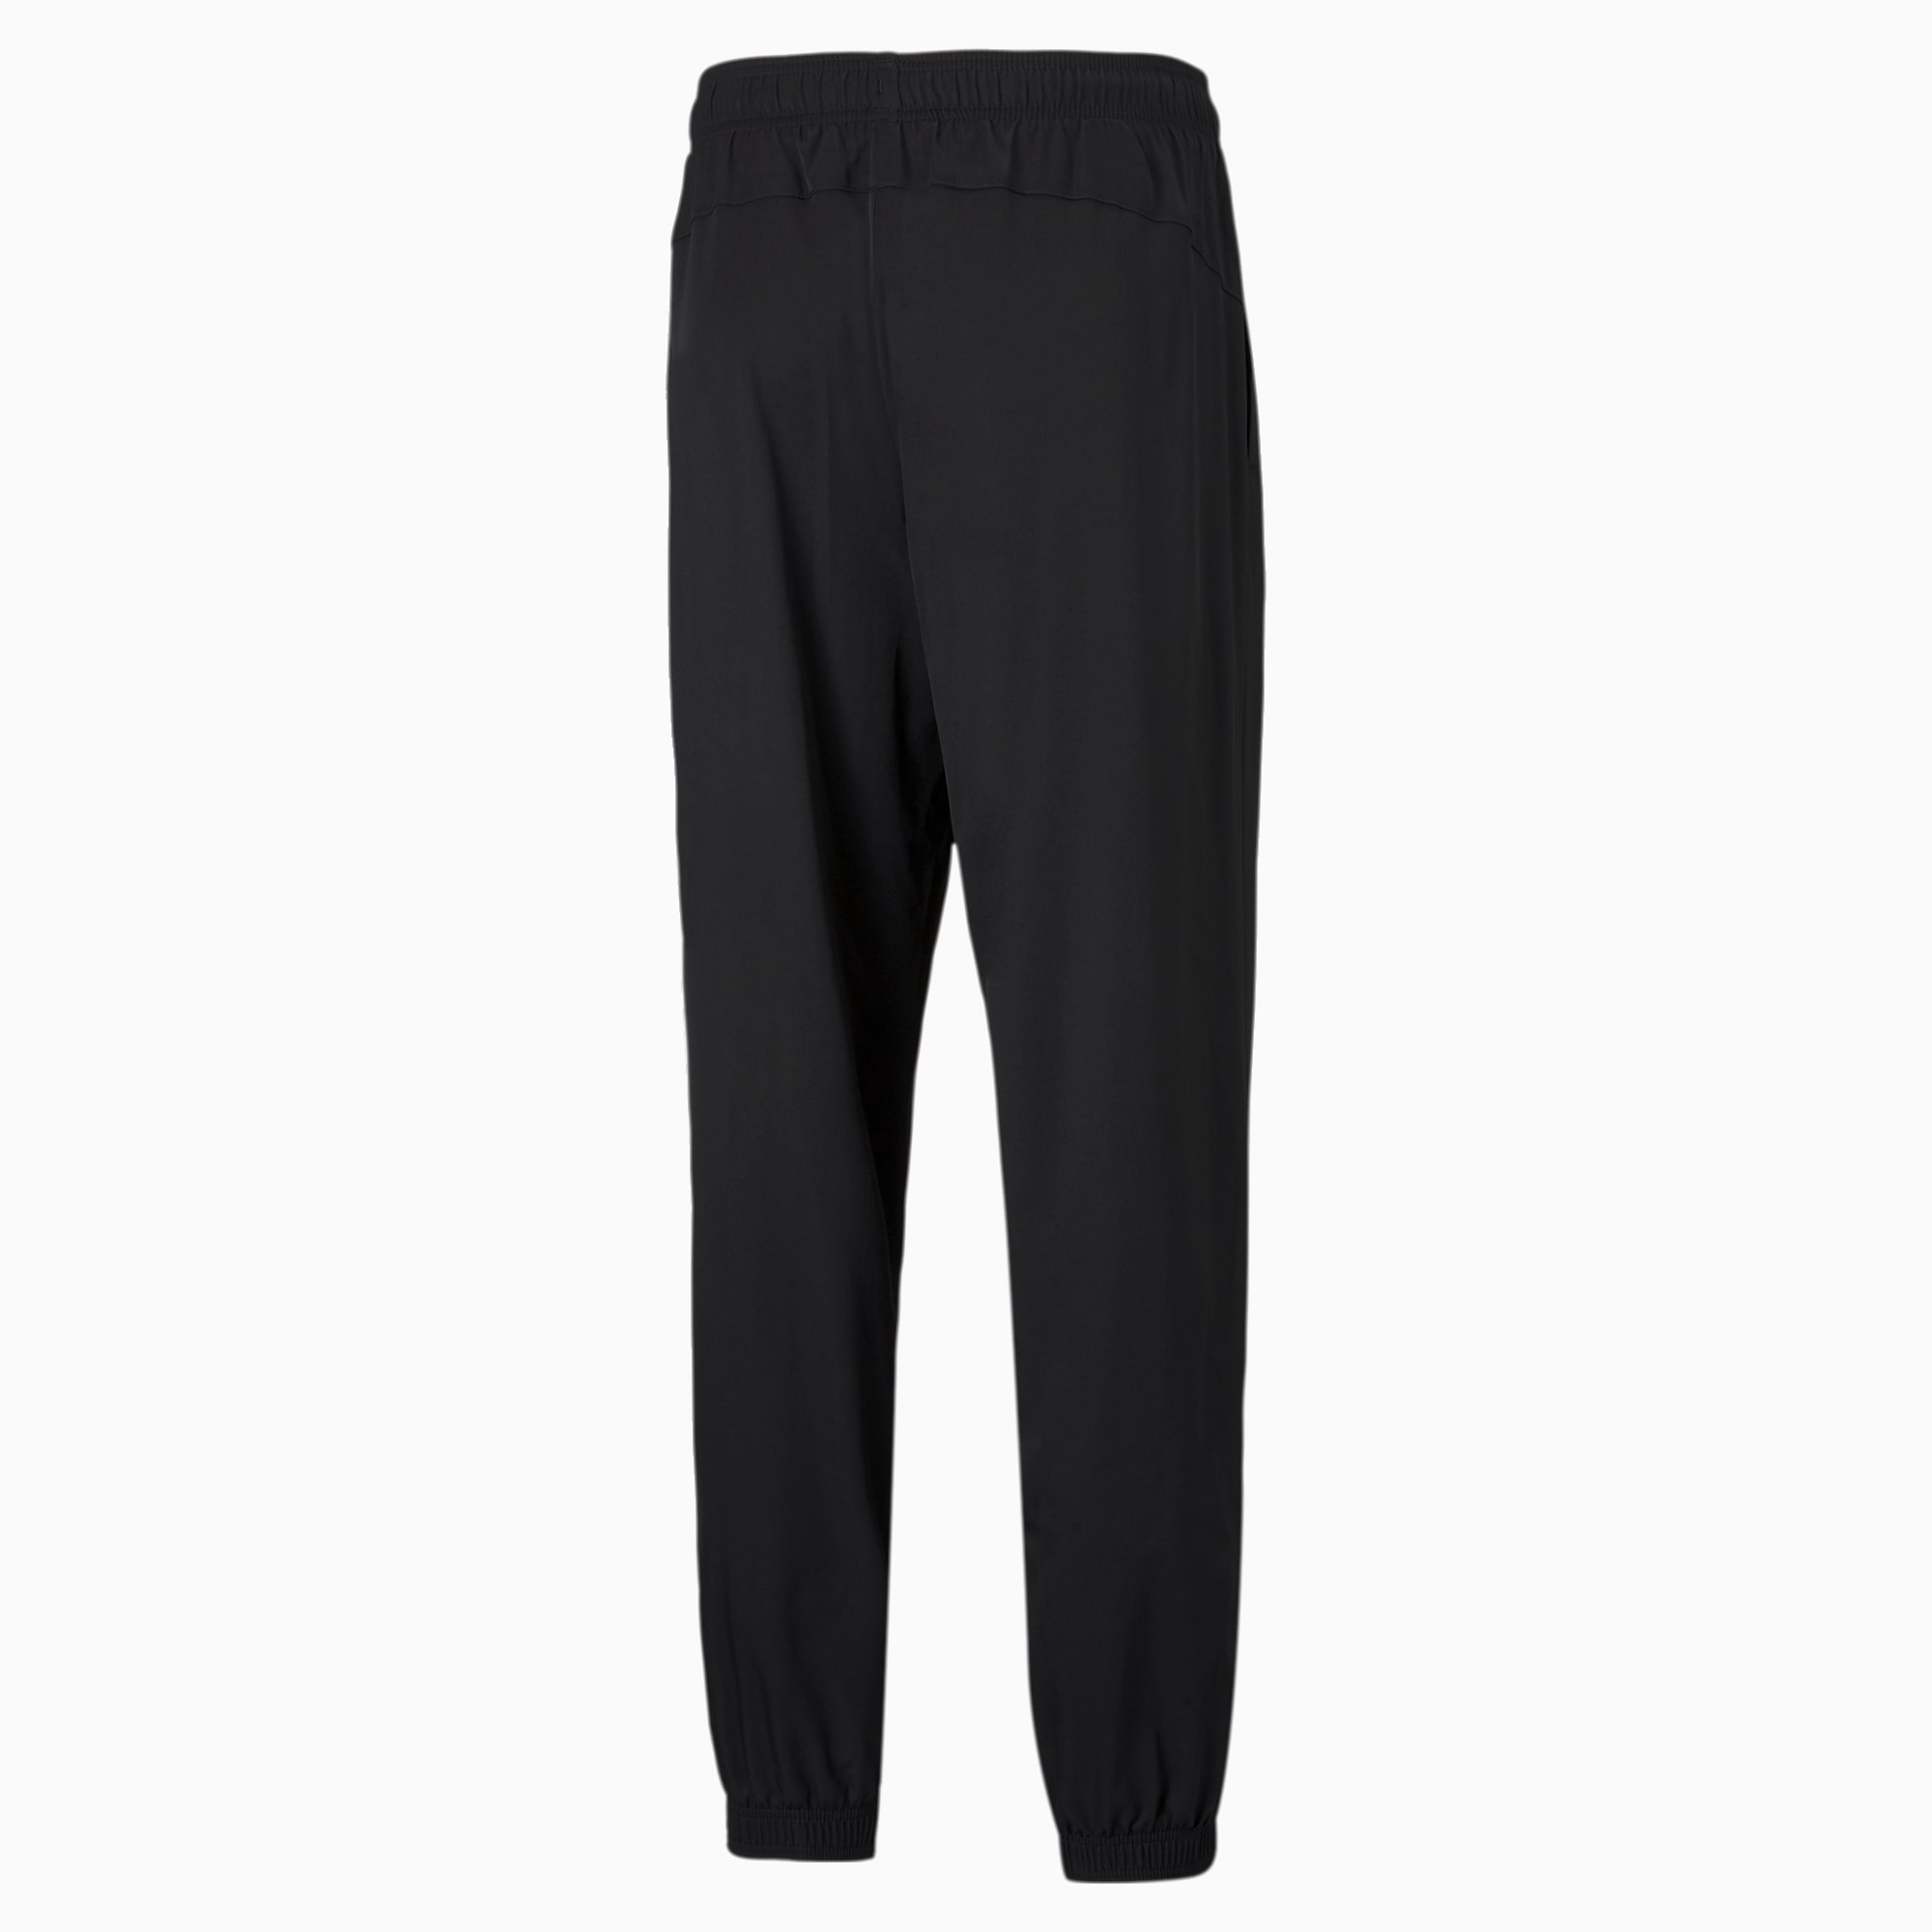 PUMA Active Woven Men's Pants, Black, Size XS, Clothing